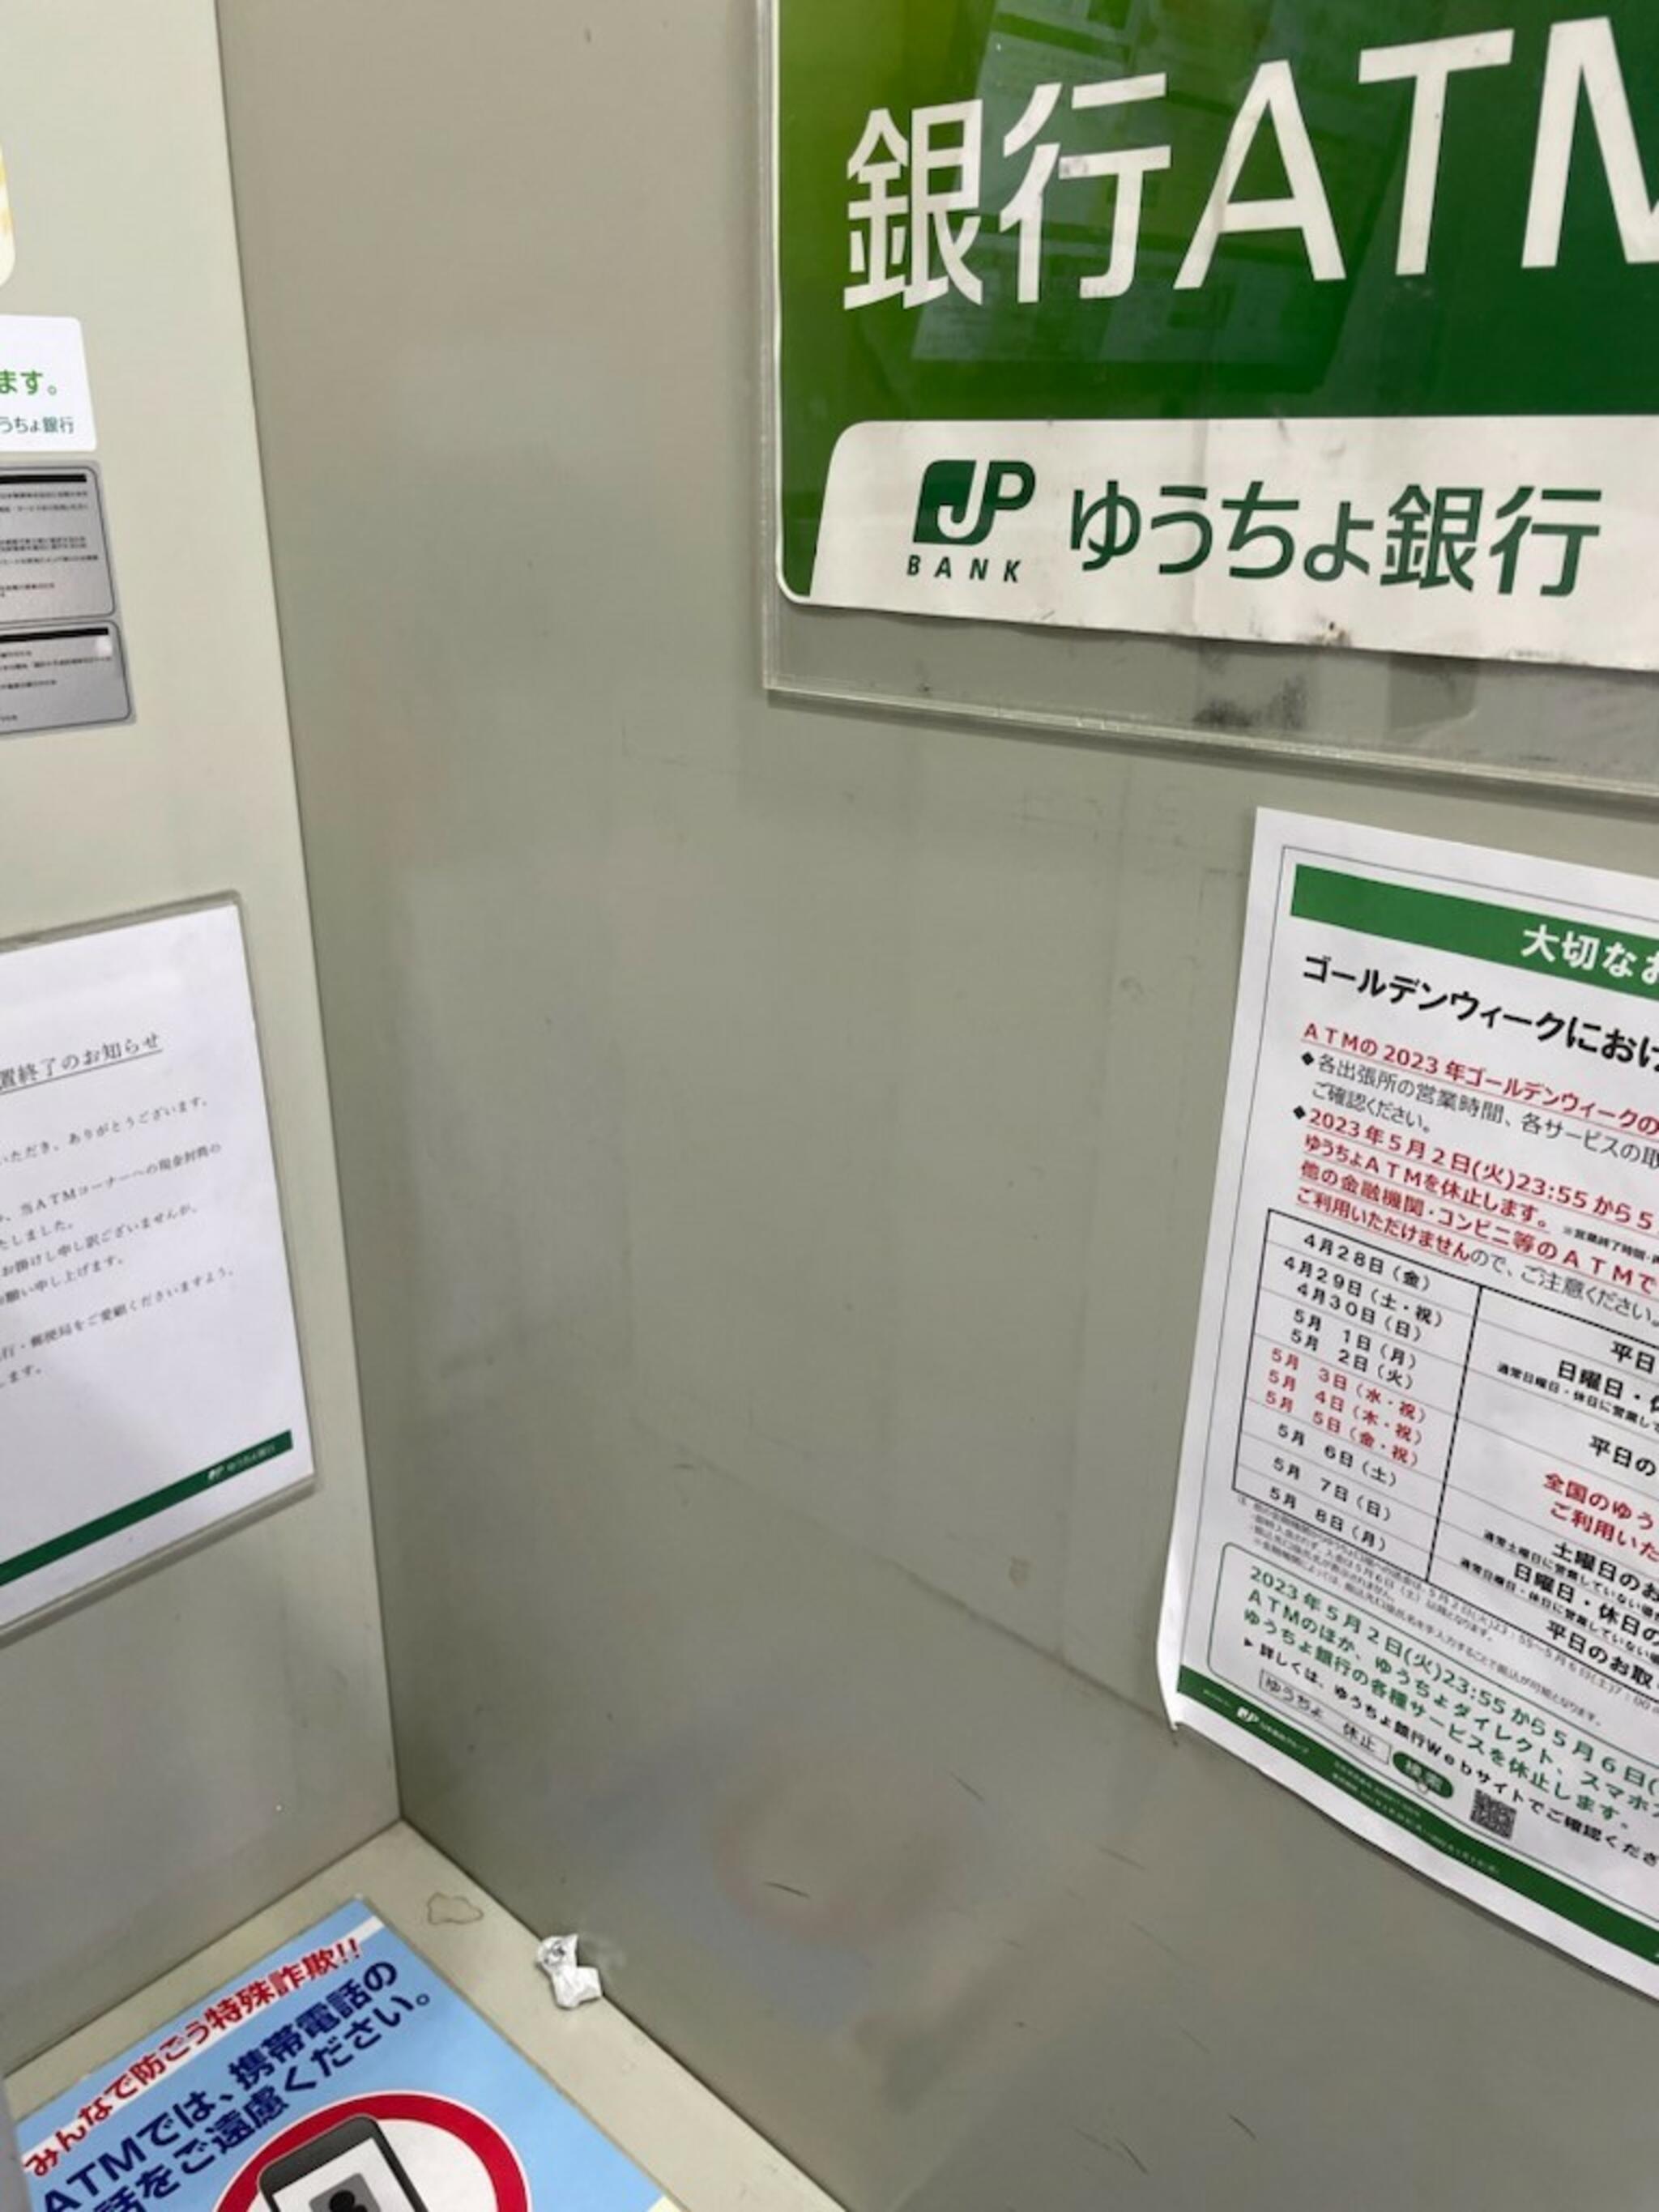 ゆうちょ銀行 ATM JR摂津富田駅内出張所の代表写真7